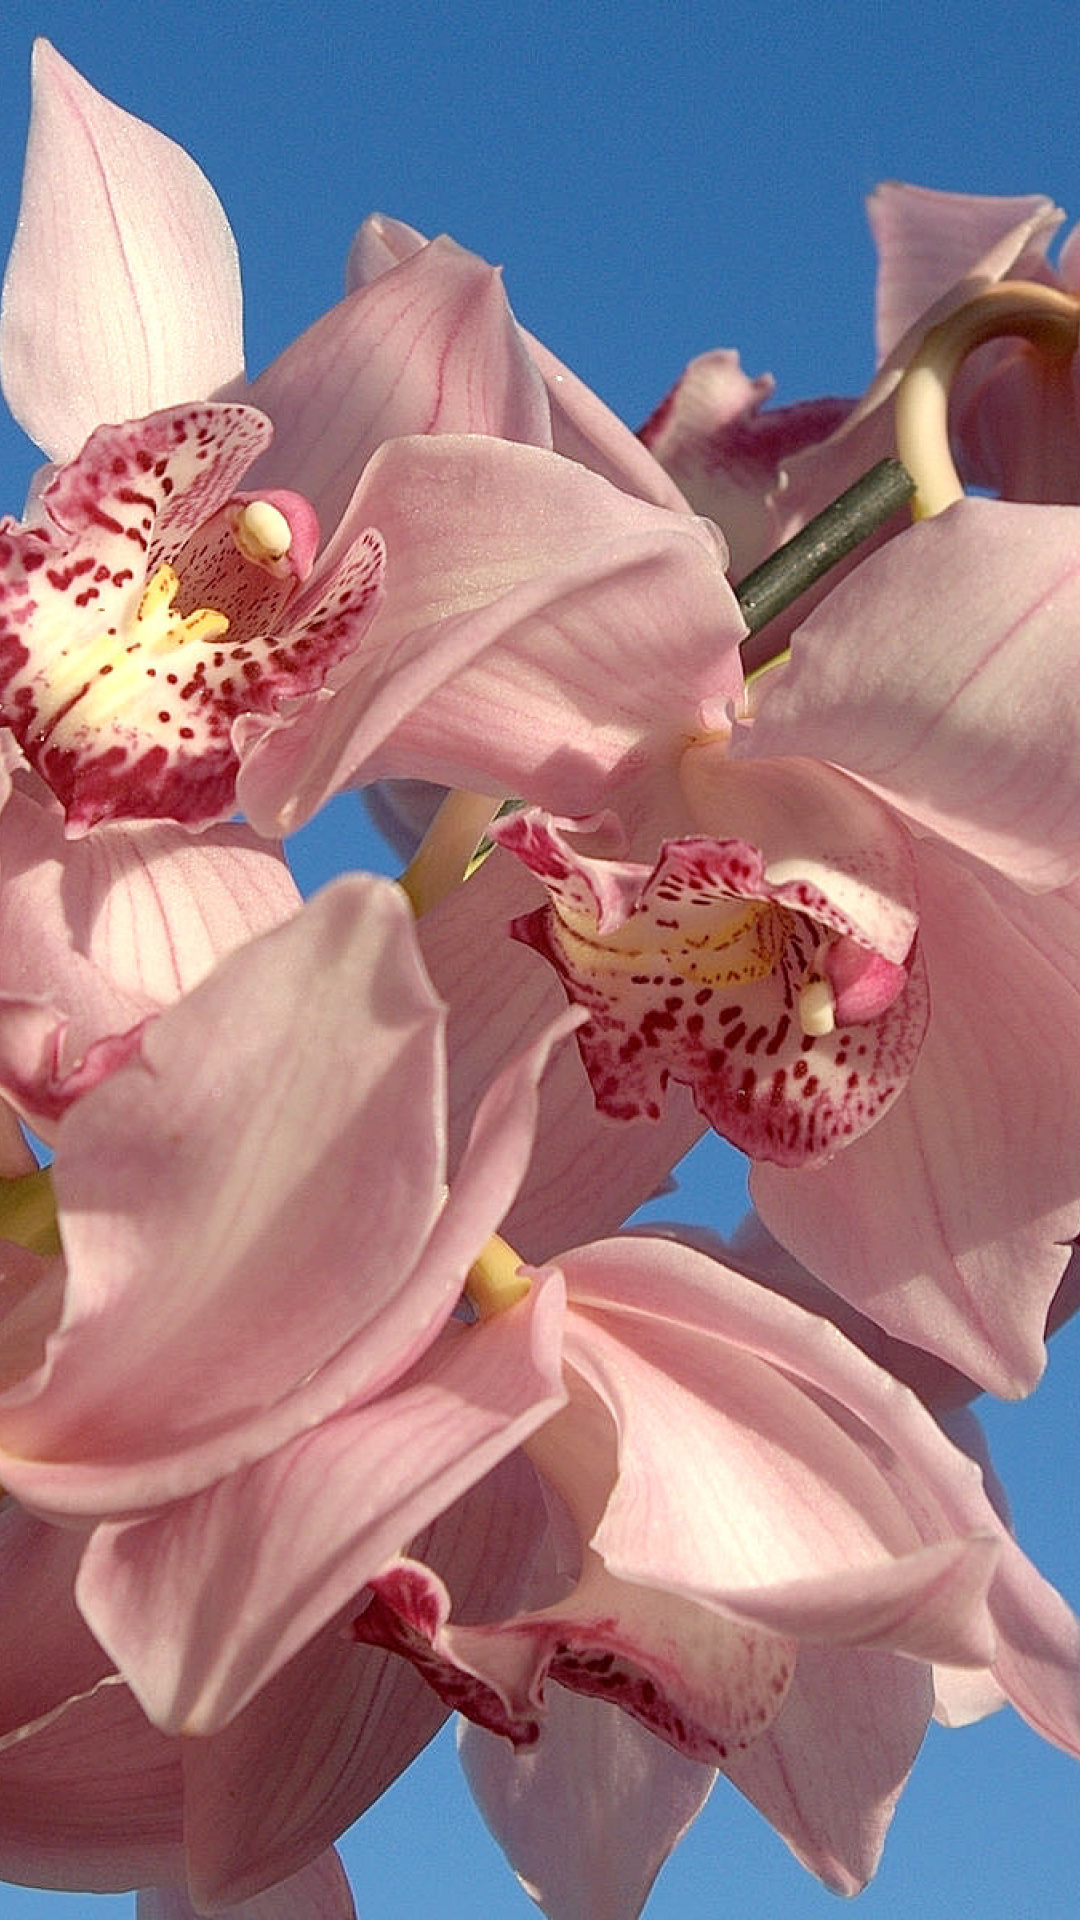 Das Pink Orchids Wallpaper 1080x1920